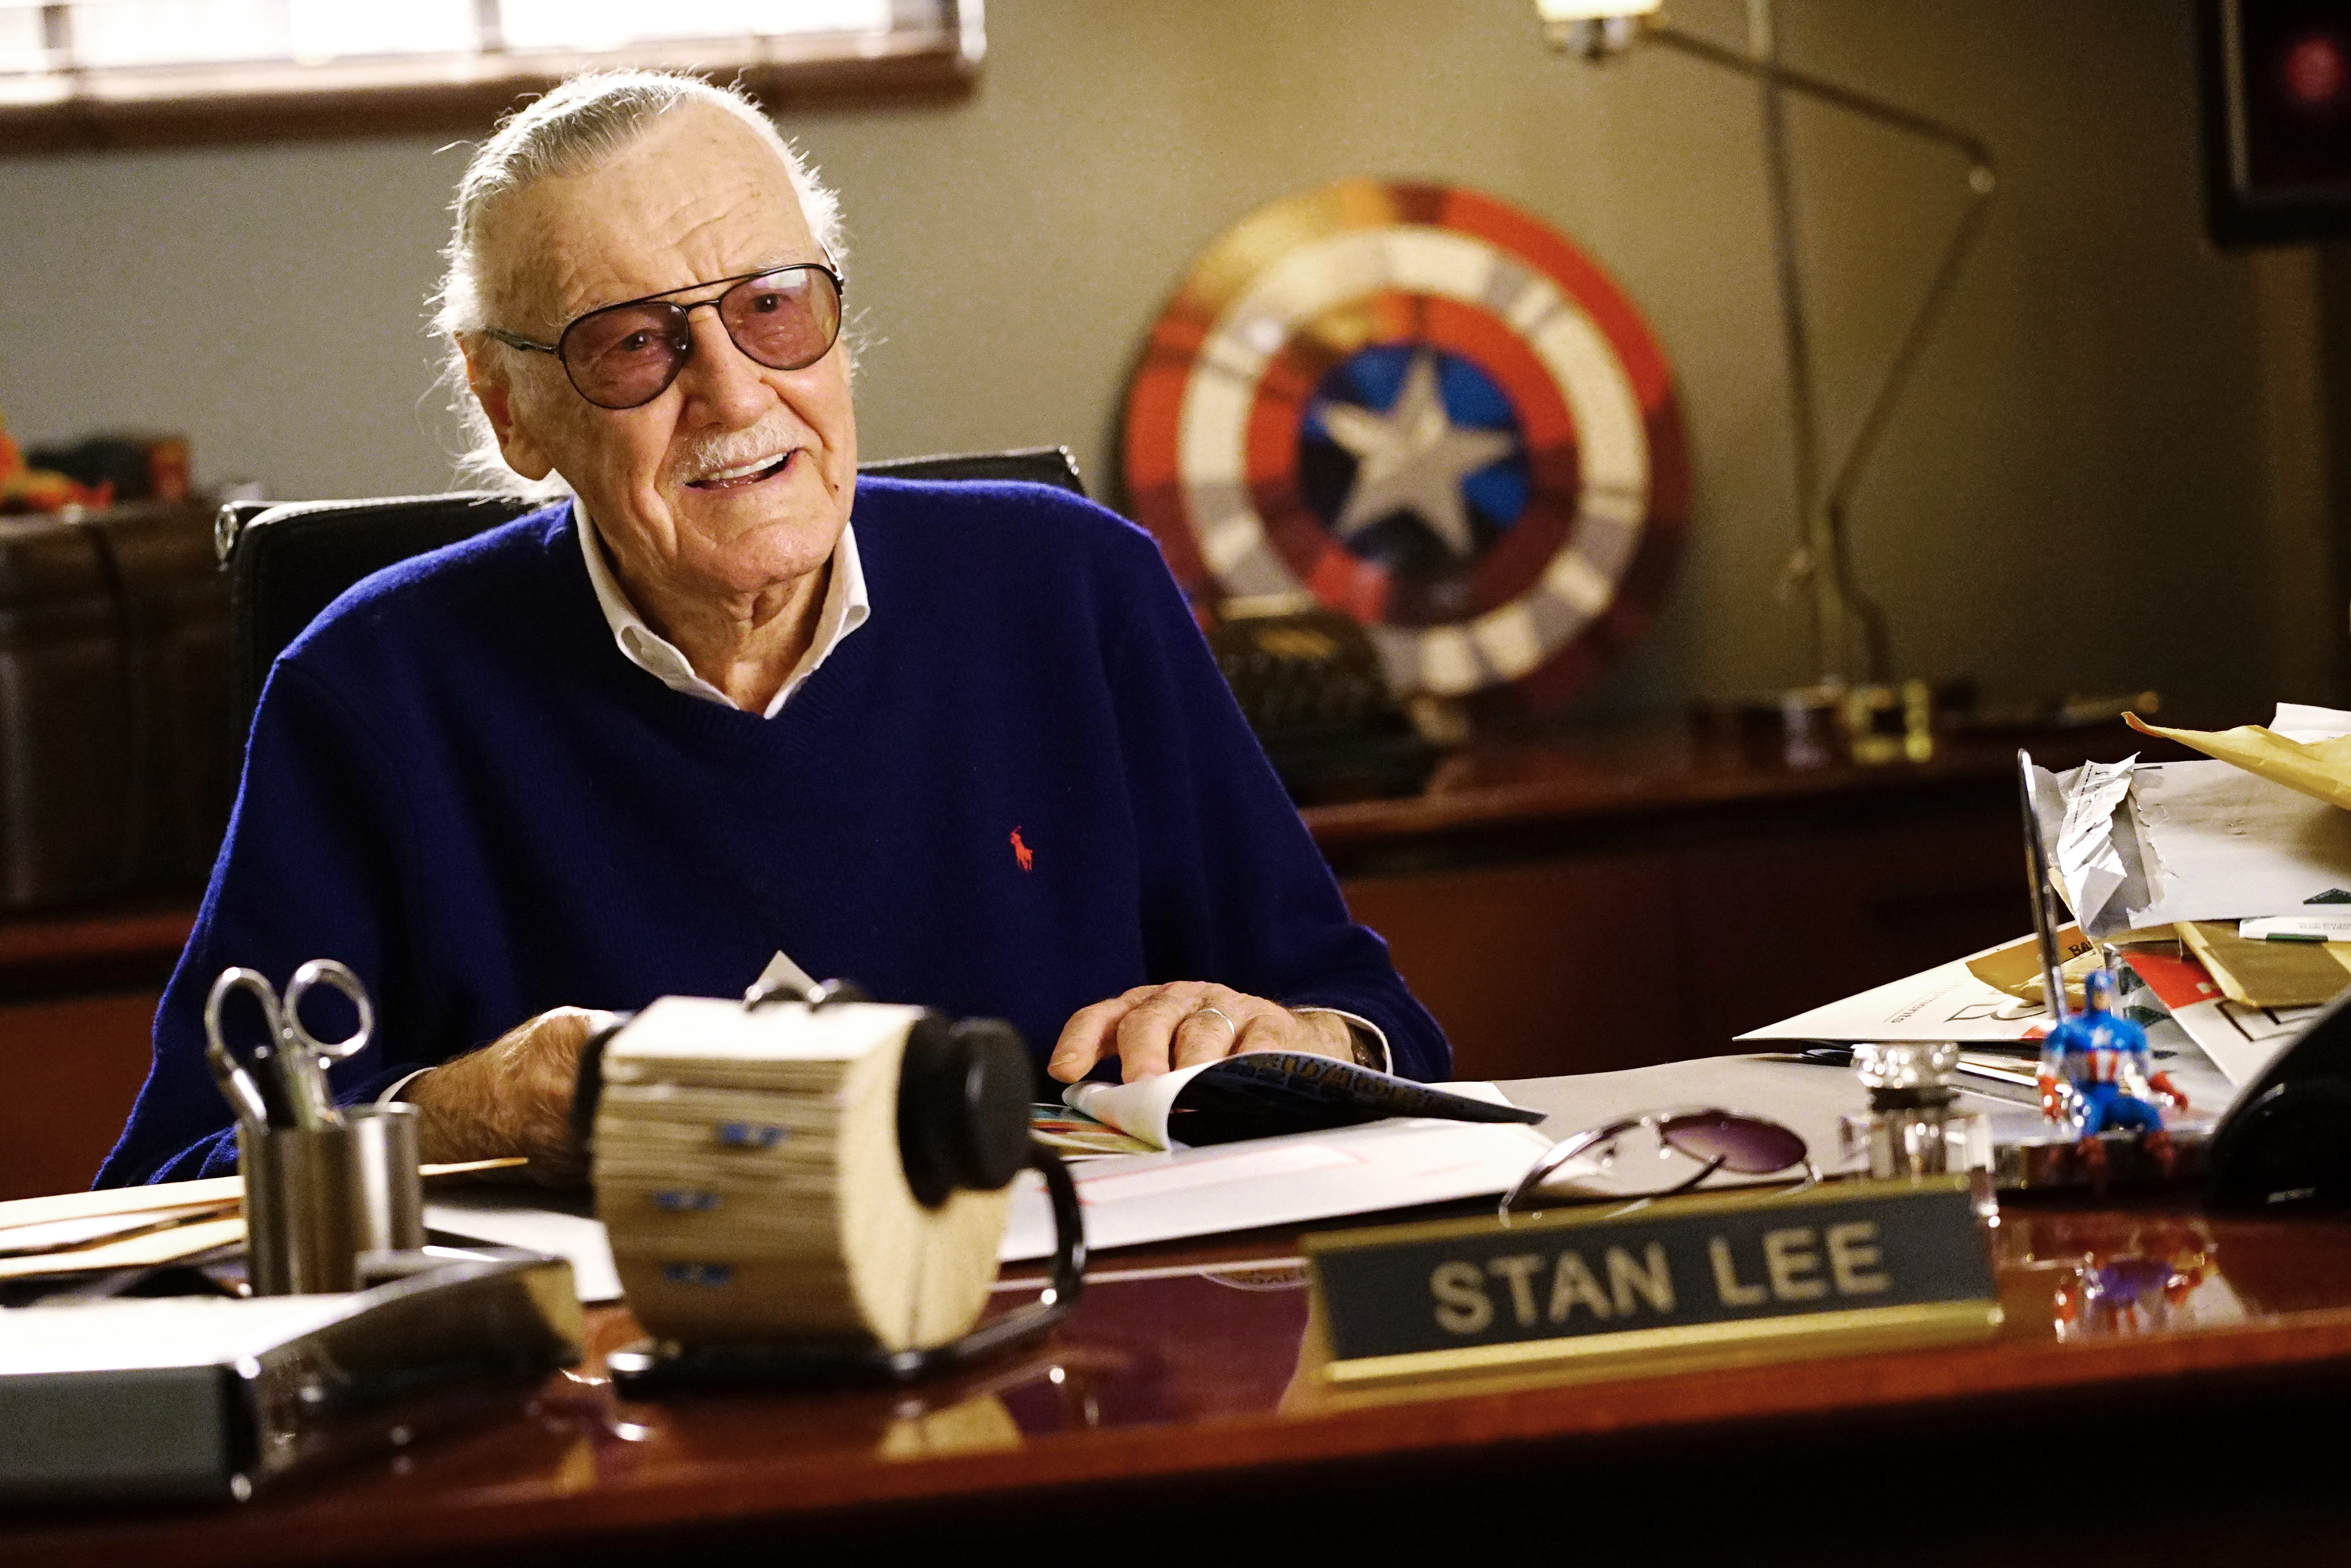 Stan Lee, creador del Universo Marvel, fallece a los 95 años.